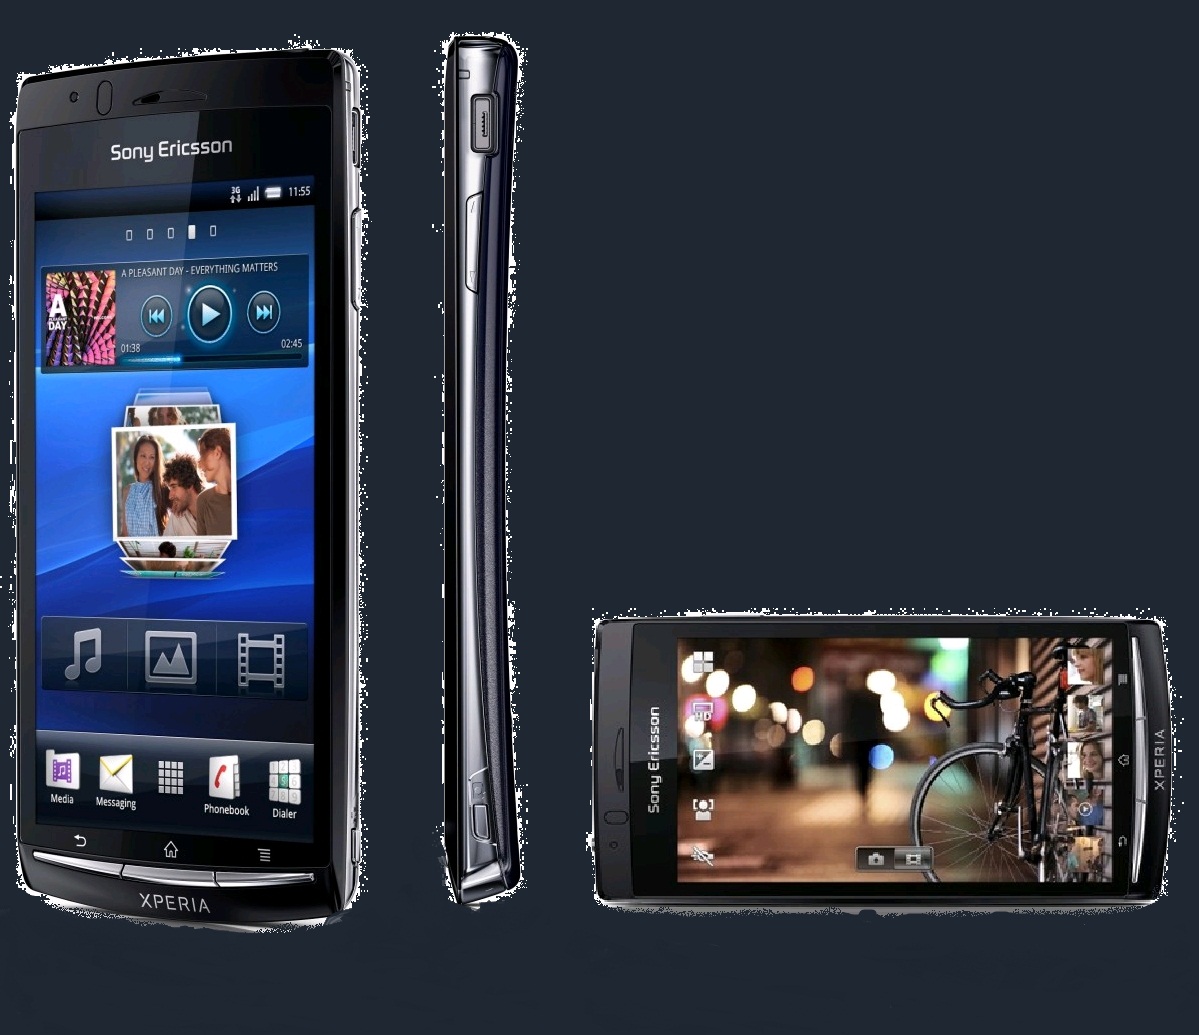 Sony Ericsson muestra el proceso fotográfico de su smartphone ARC